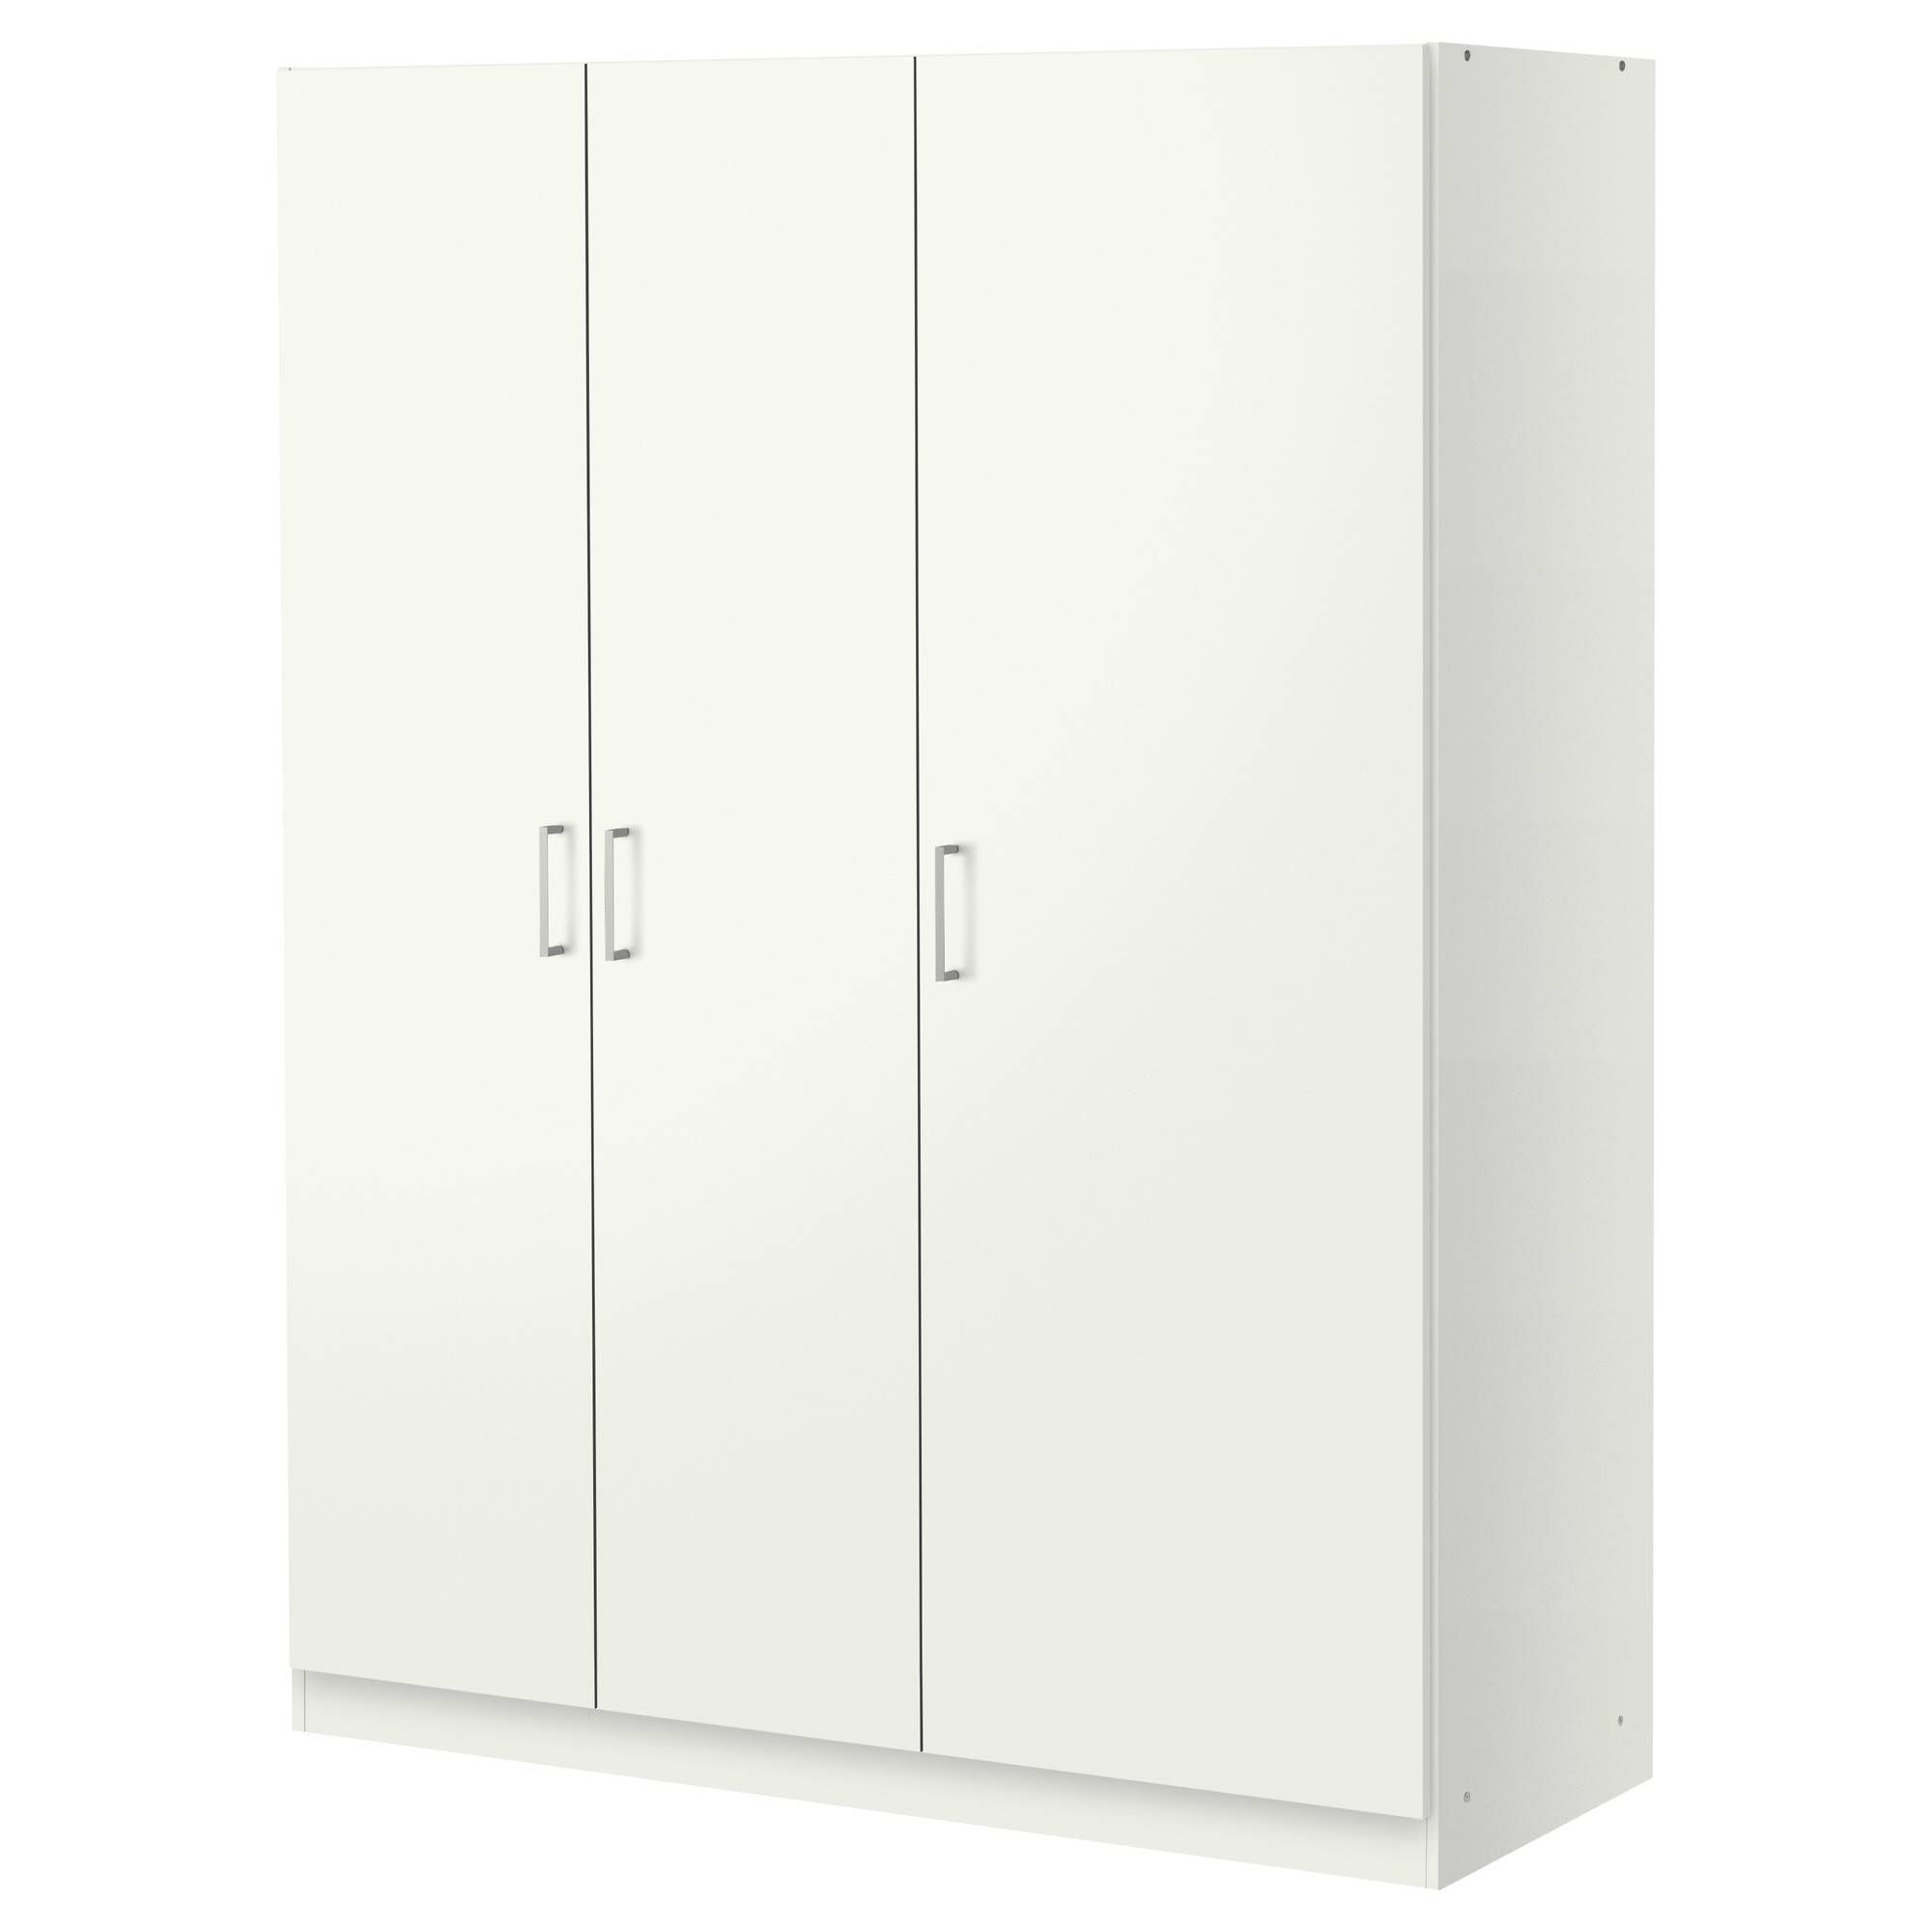 Dombås Wardrobe White 140x181 Cm – Ikea Pertaining To Double Rail Wardrobes Argos (Photo 21 of 30)